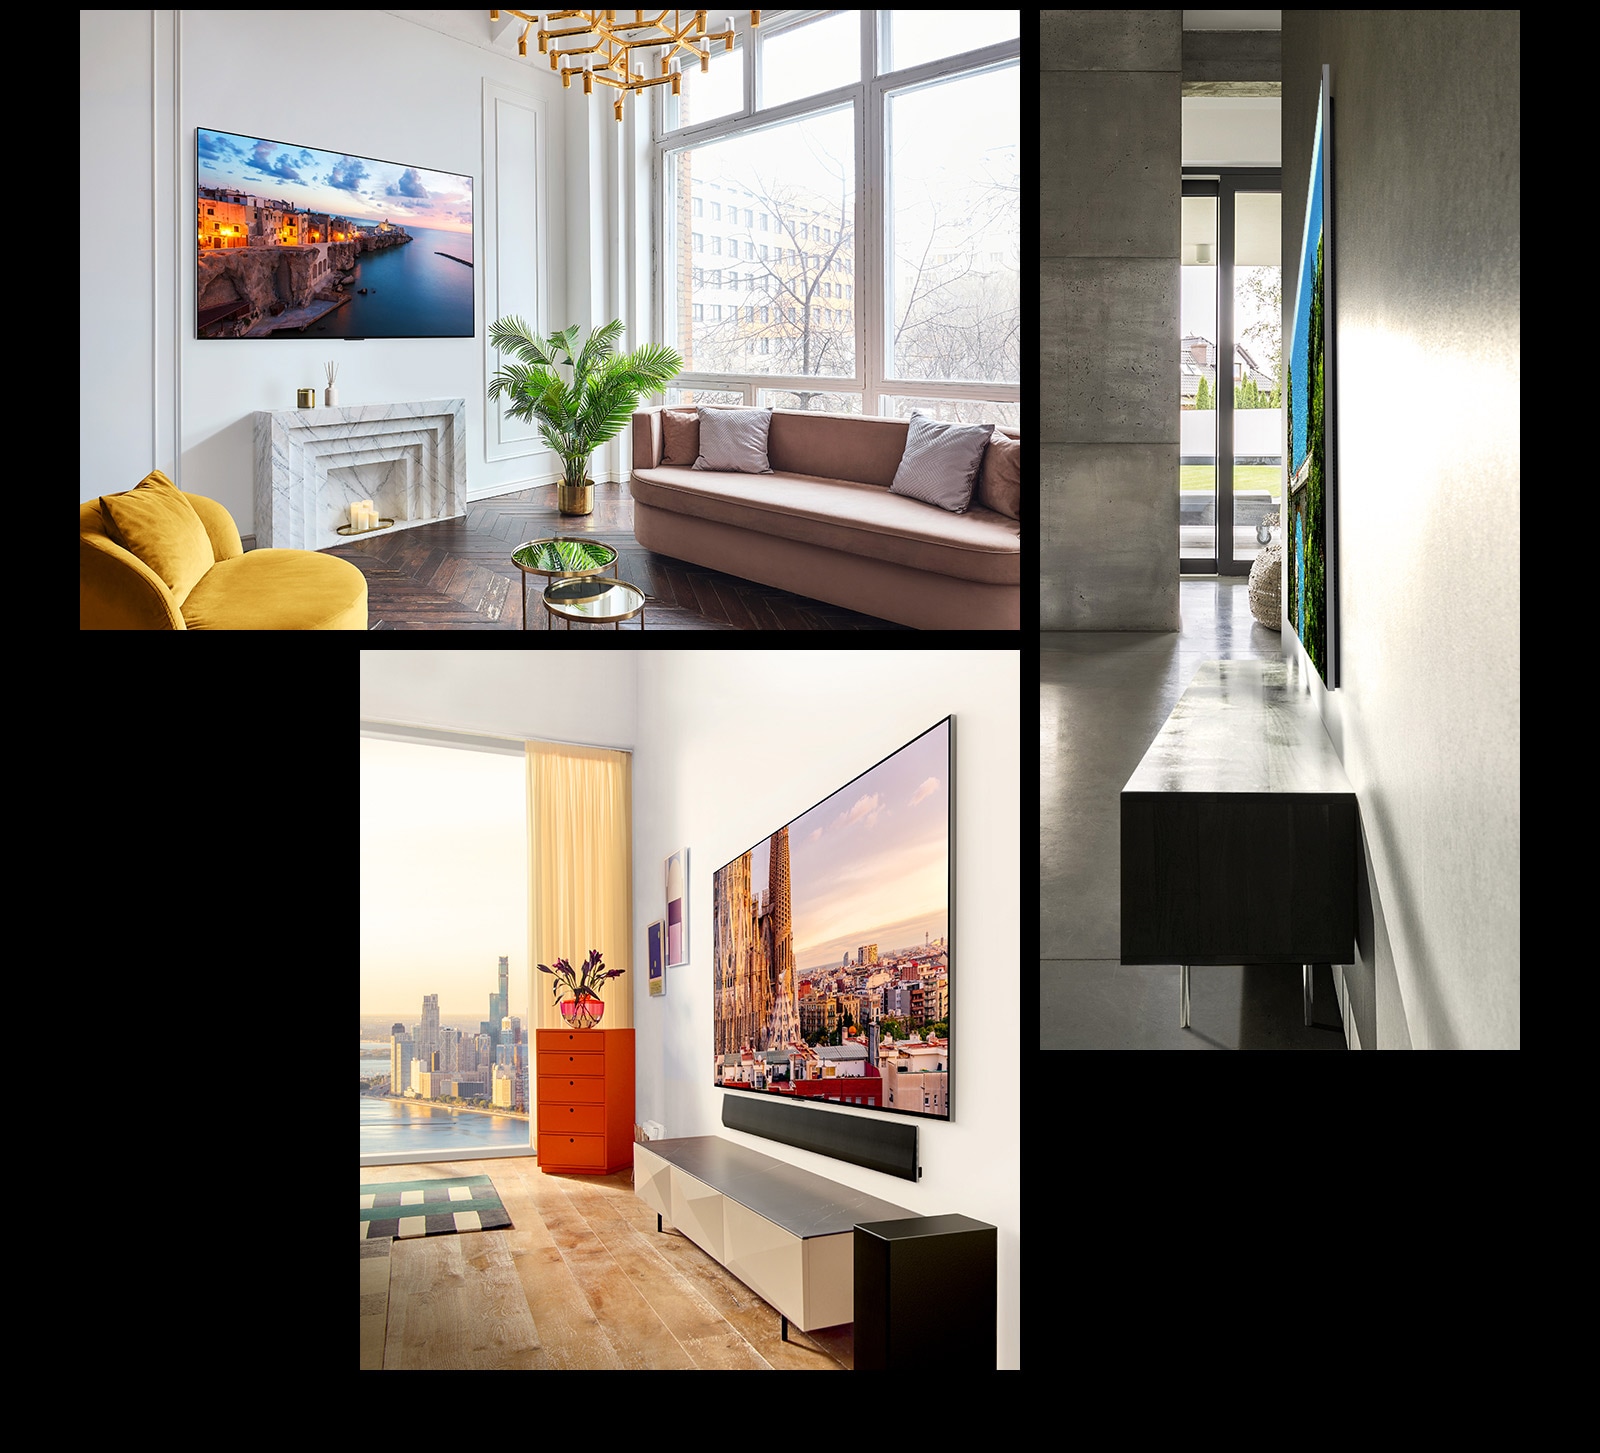 Slika televizorja LG OLED G3 na steni okrašene sobe, ki prikazuje One Wall Design.  Stranski pogled na neverjetno tanke dimenzije televizorja LG OLED G3.  Pogled iz vogala modela LG OLED G3 na steno stanovanja s pogledom na mesto, spodaj pa je Soundbar.